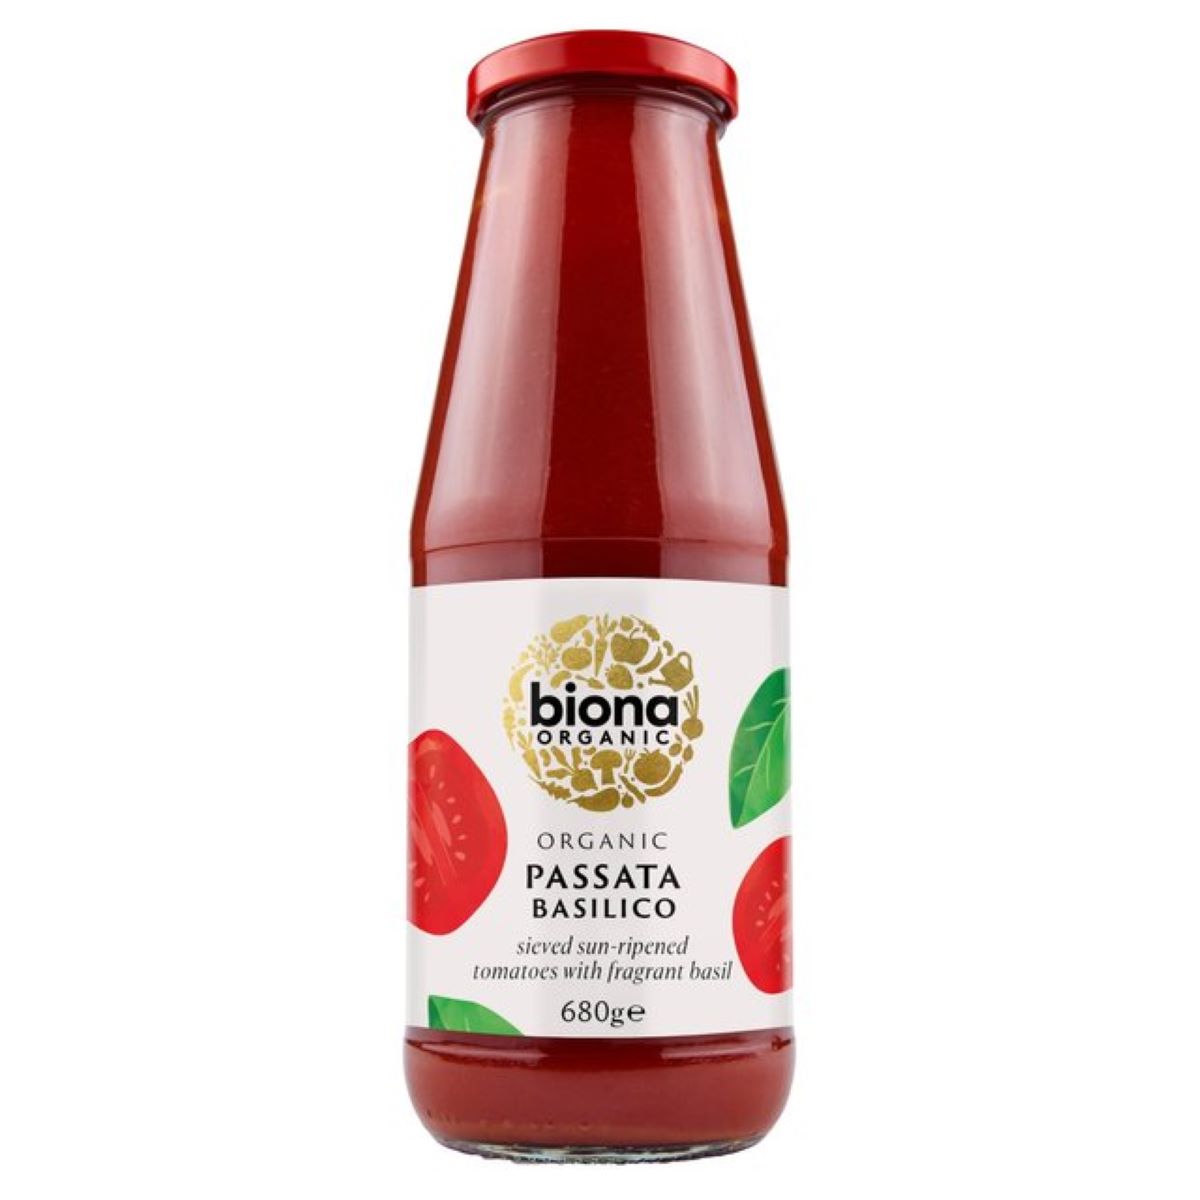 Biona Organic Passata with Basilico 680g